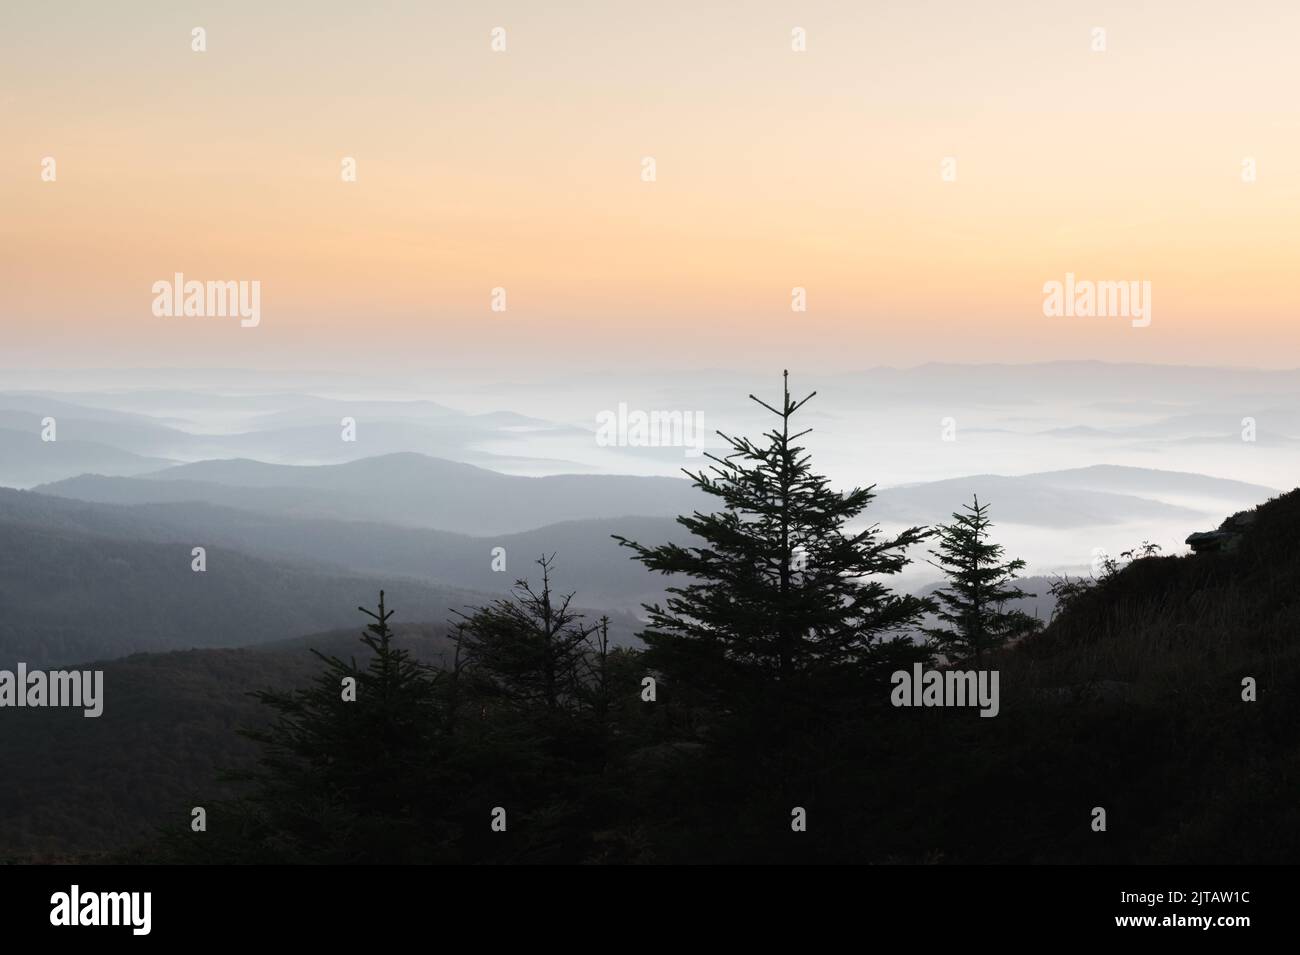 Nebbia mattutina nelle montagne autunnali. Silhouette di abeti in primo piano. Bellissima alba sullo sfondo. Fotografia di paesaggi Foto Stock